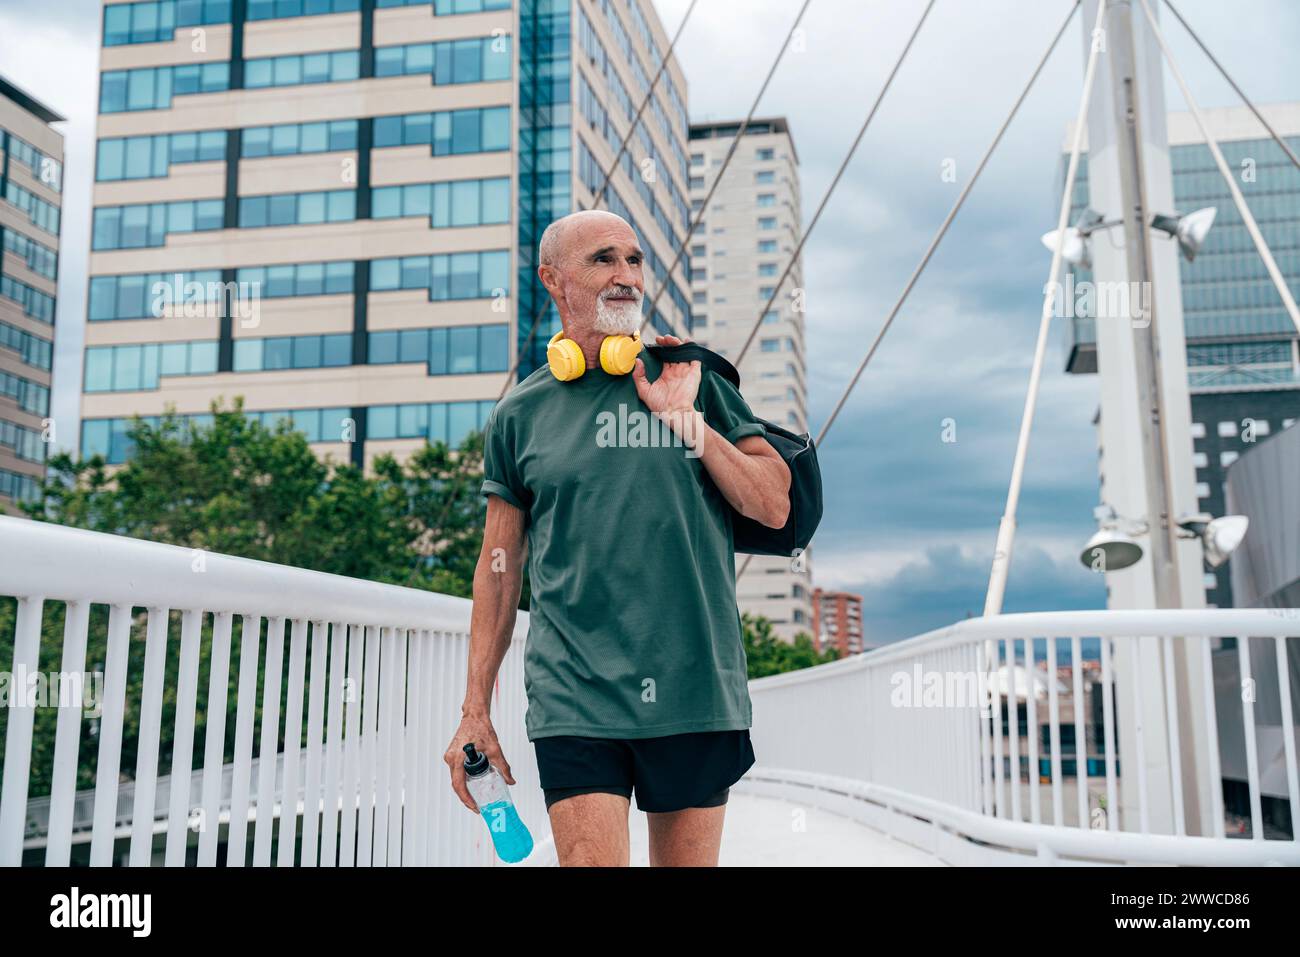 Aktiver Seniorenmann, der mit Energy Drink Flasche und Tasche auf der Fußgängerbrücke läuft Stockfoto